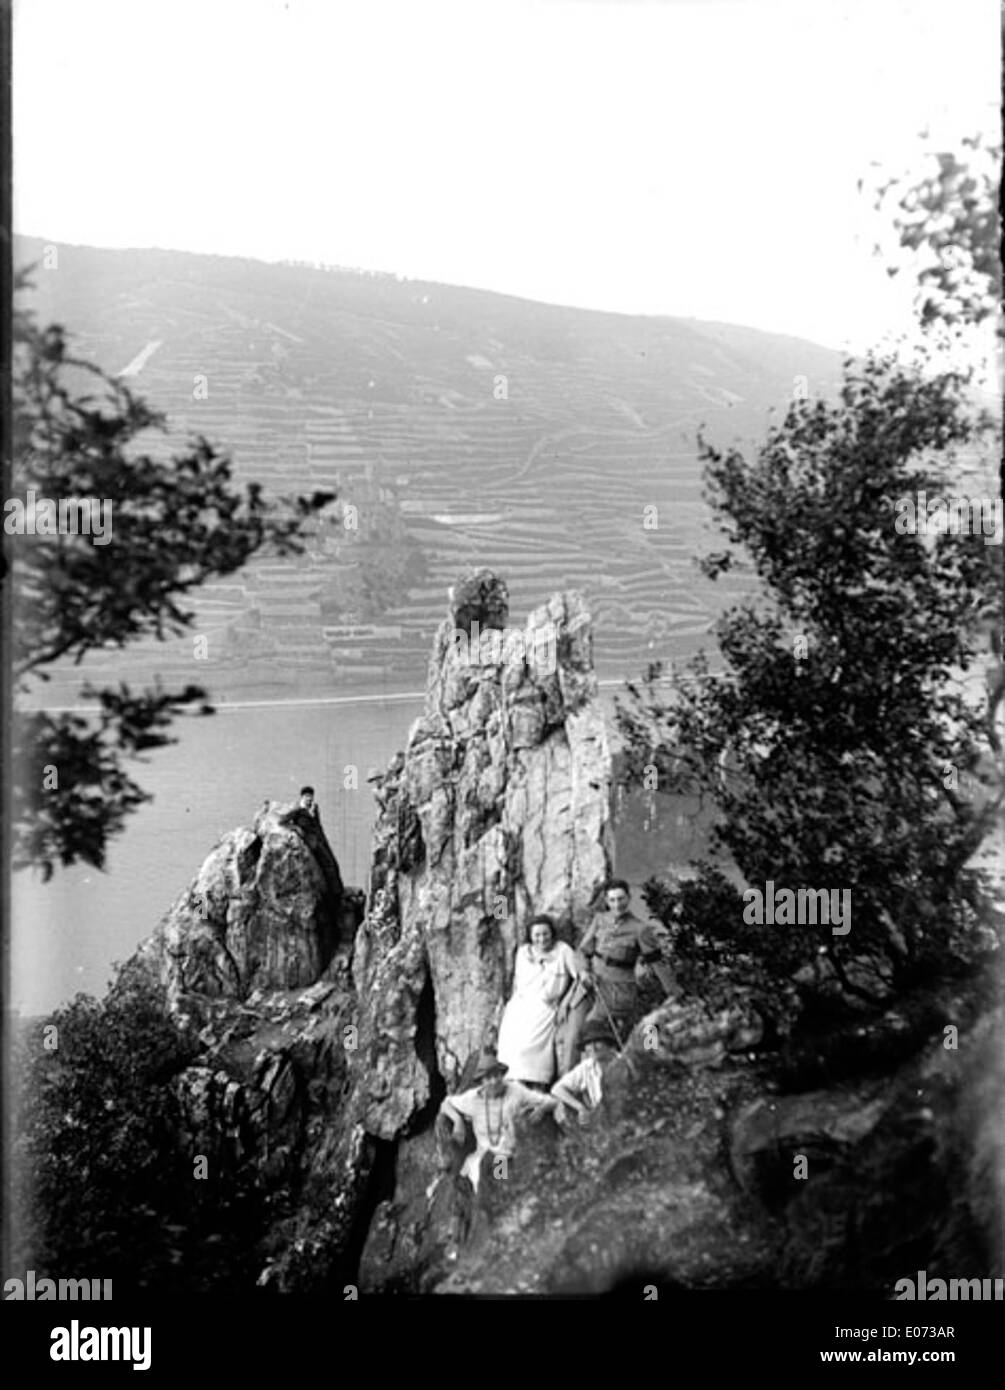 Groupe posant Près d'un éperon dominante rocheux la Vallée du Haut-Rhin, Allemagne Foto de stock